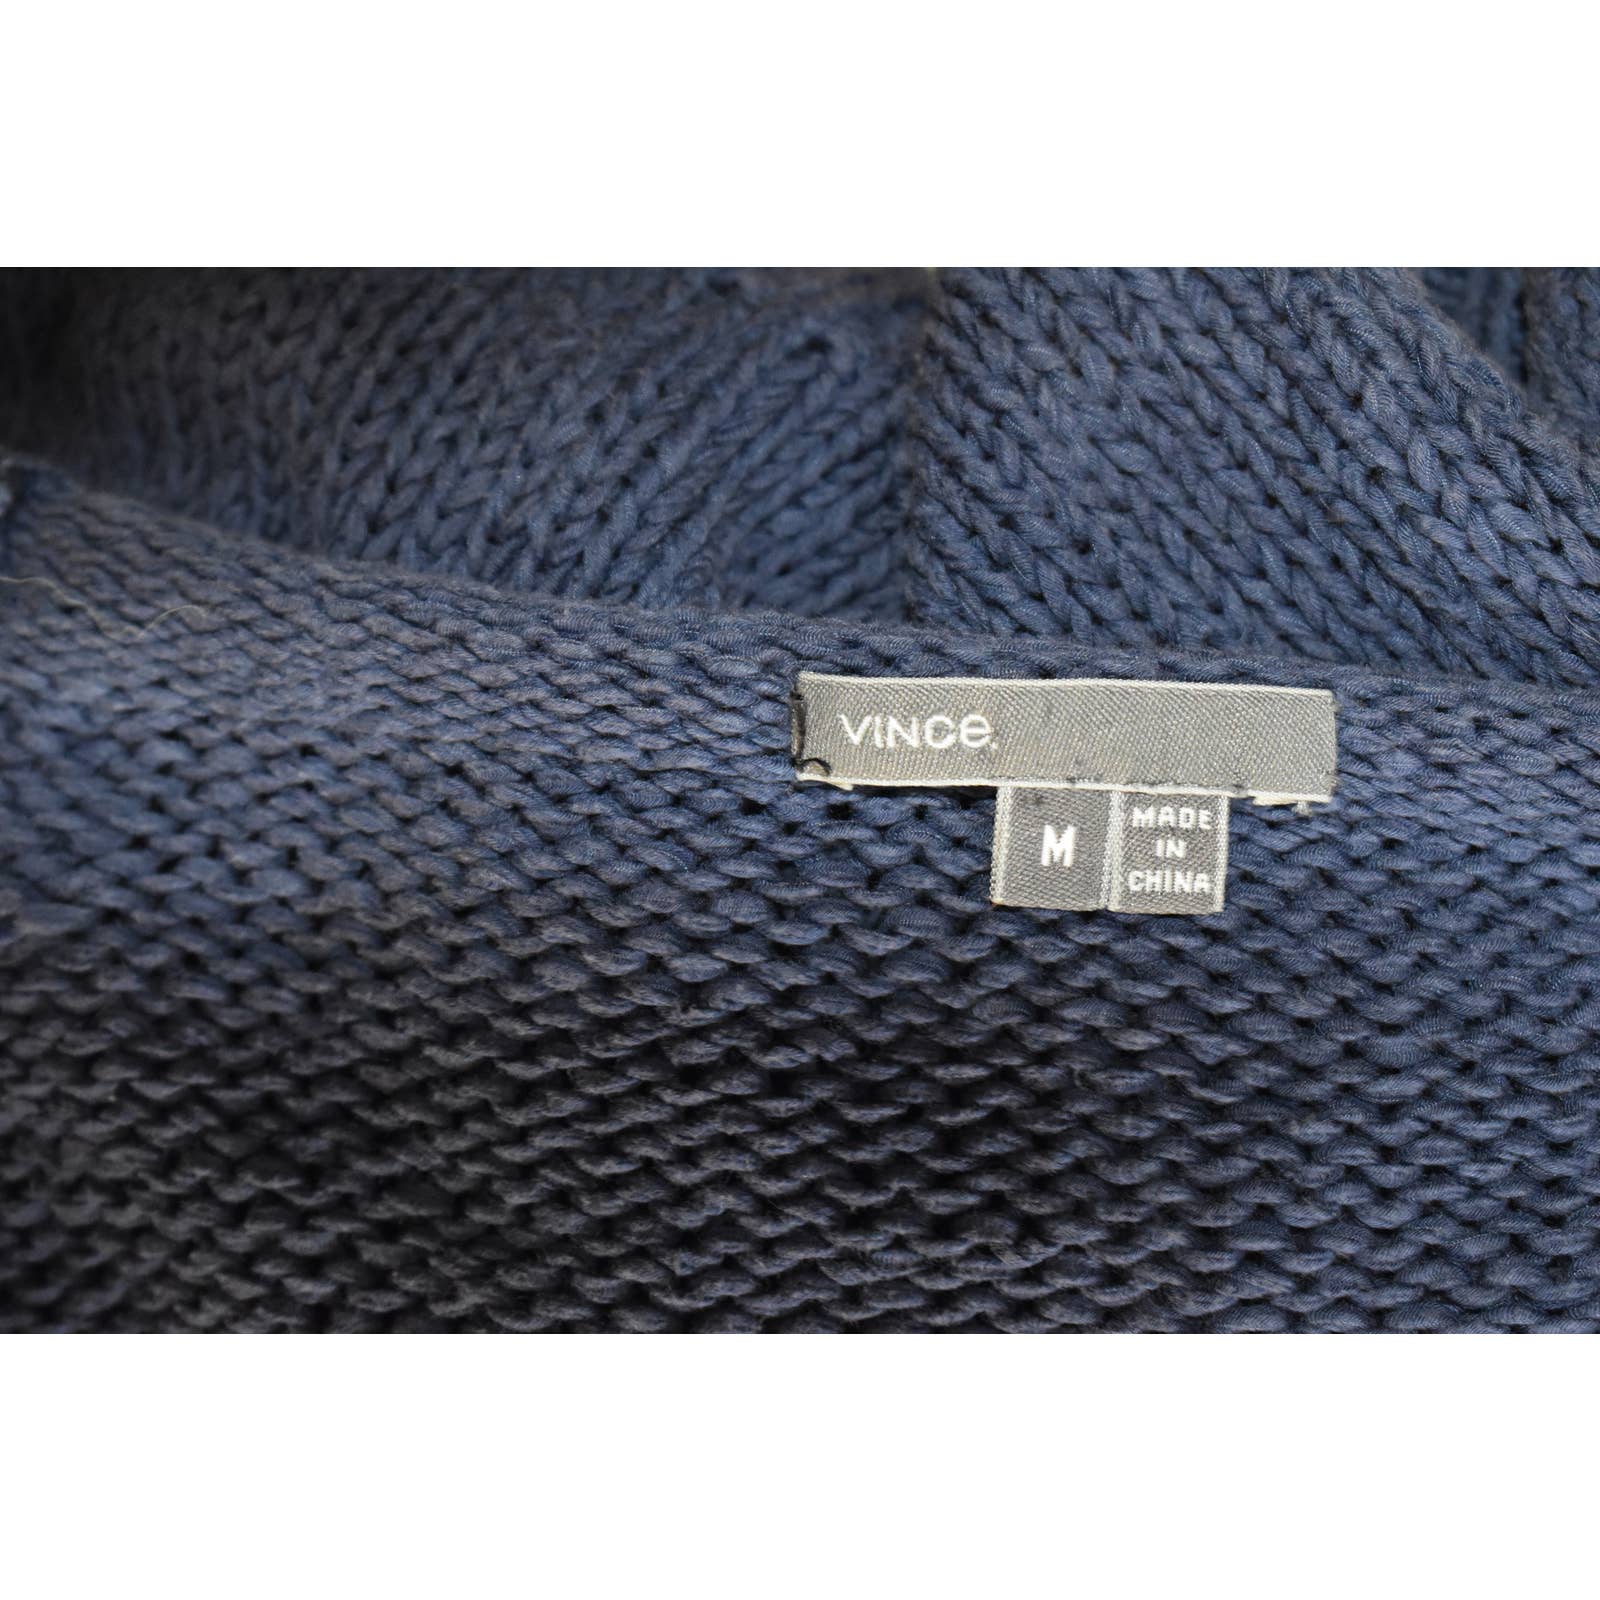 VInce Blue Cotton Knit Wide Neck Sweater - M